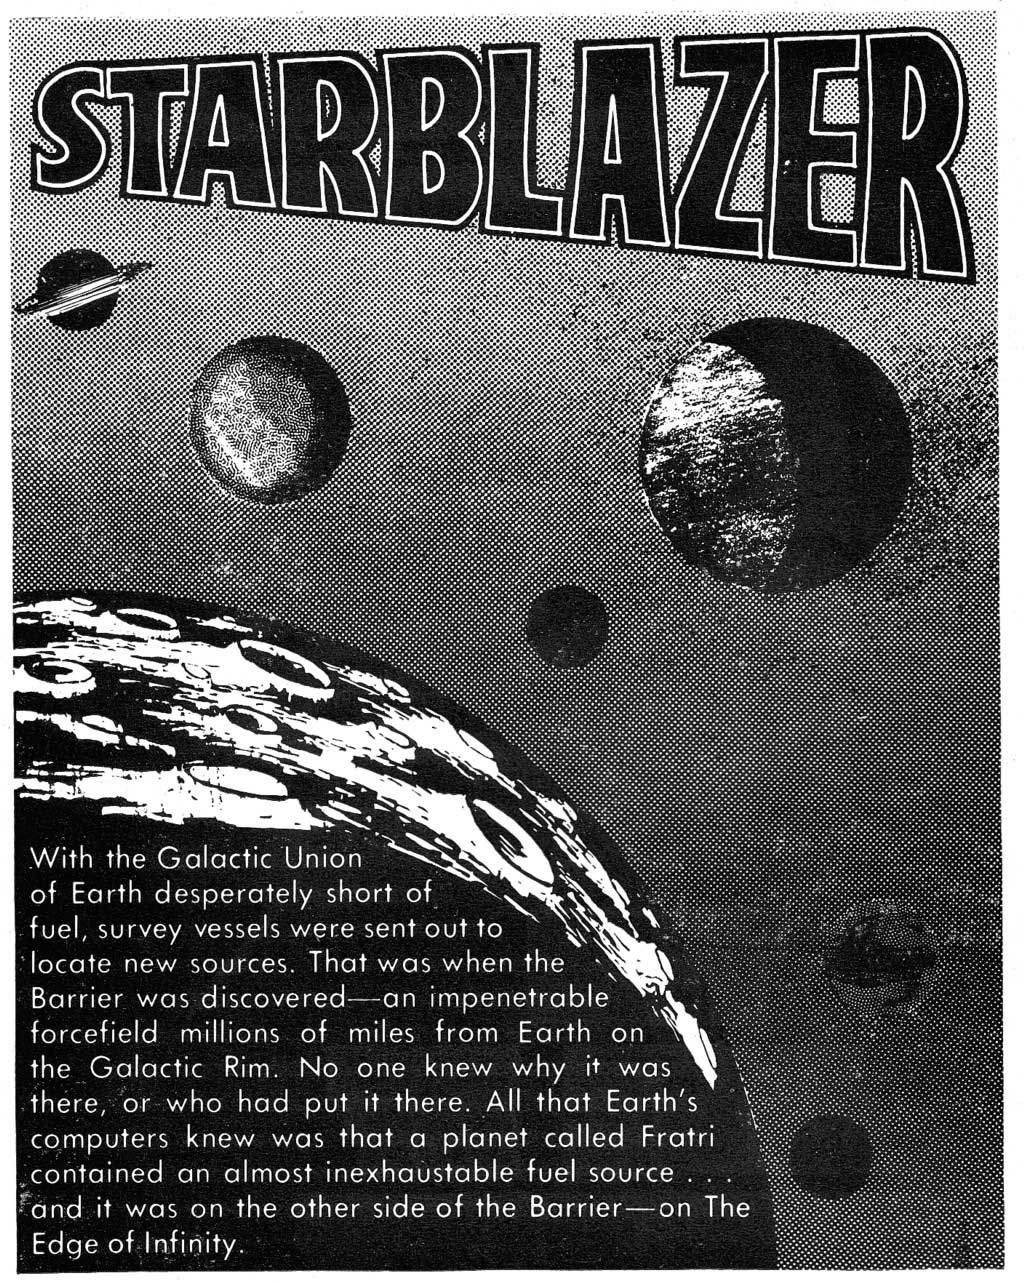 Read online Starblazer comic -  Issue #4 - 2